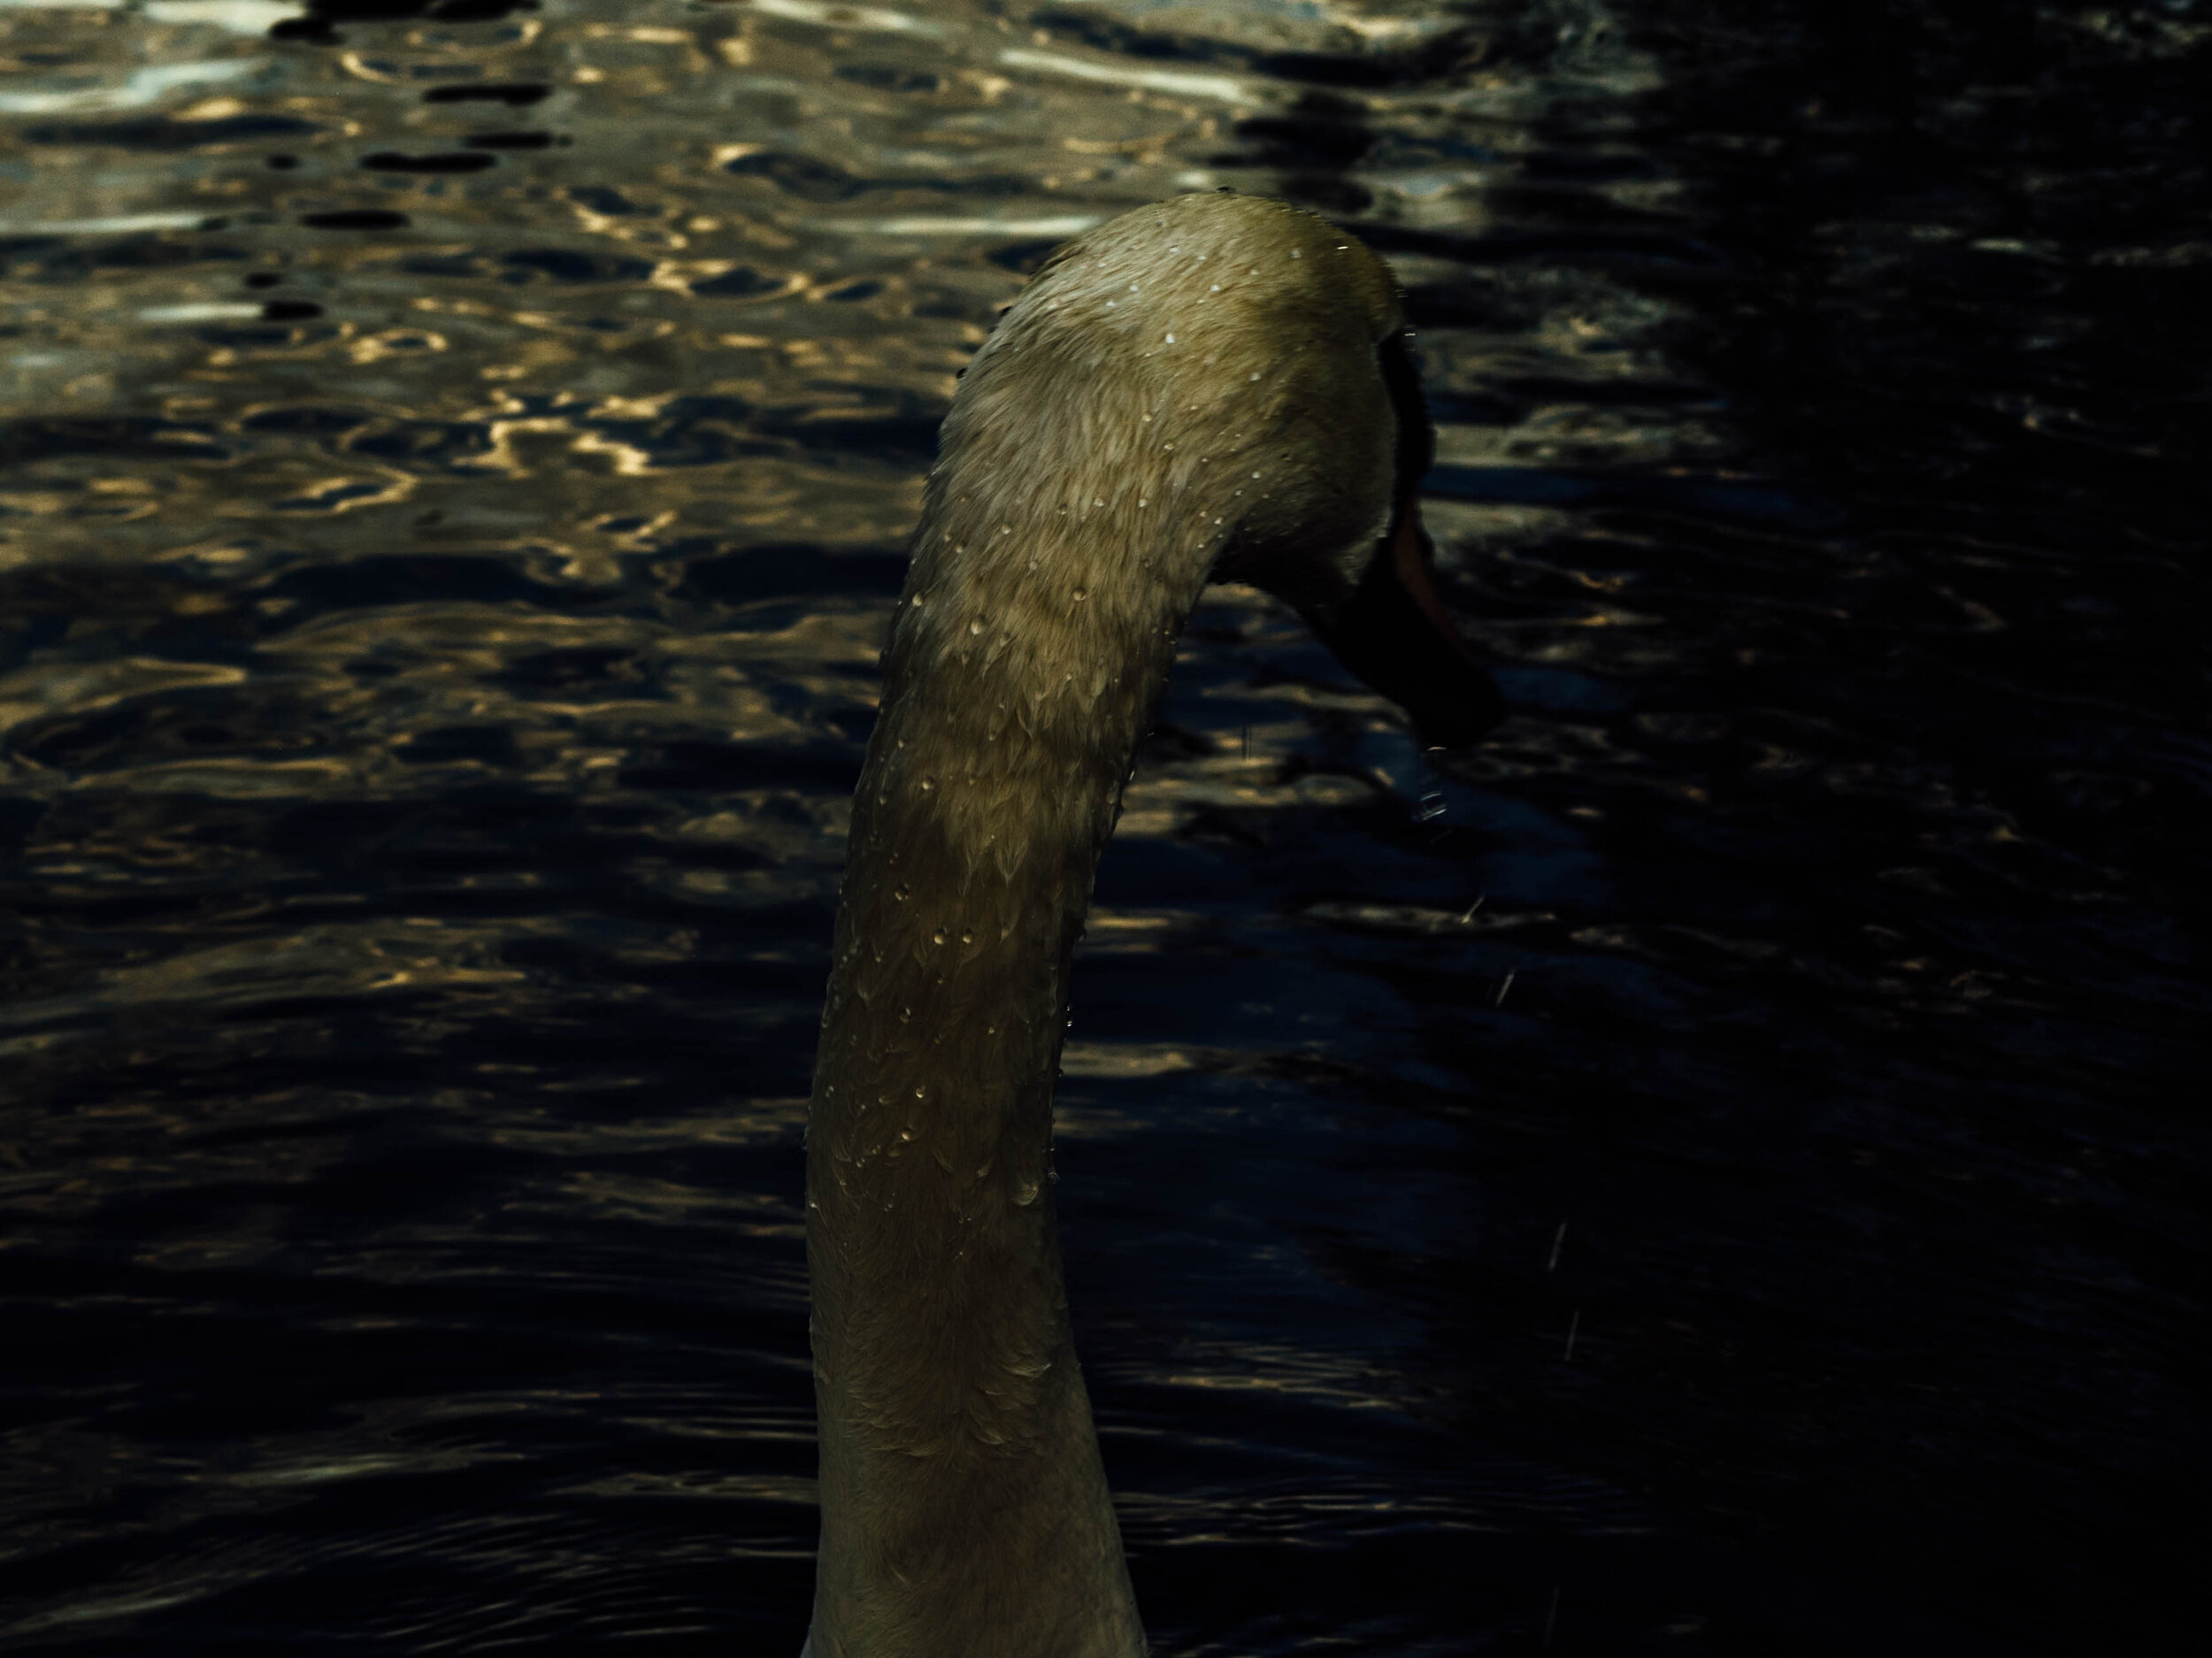 Swan-2.jpg